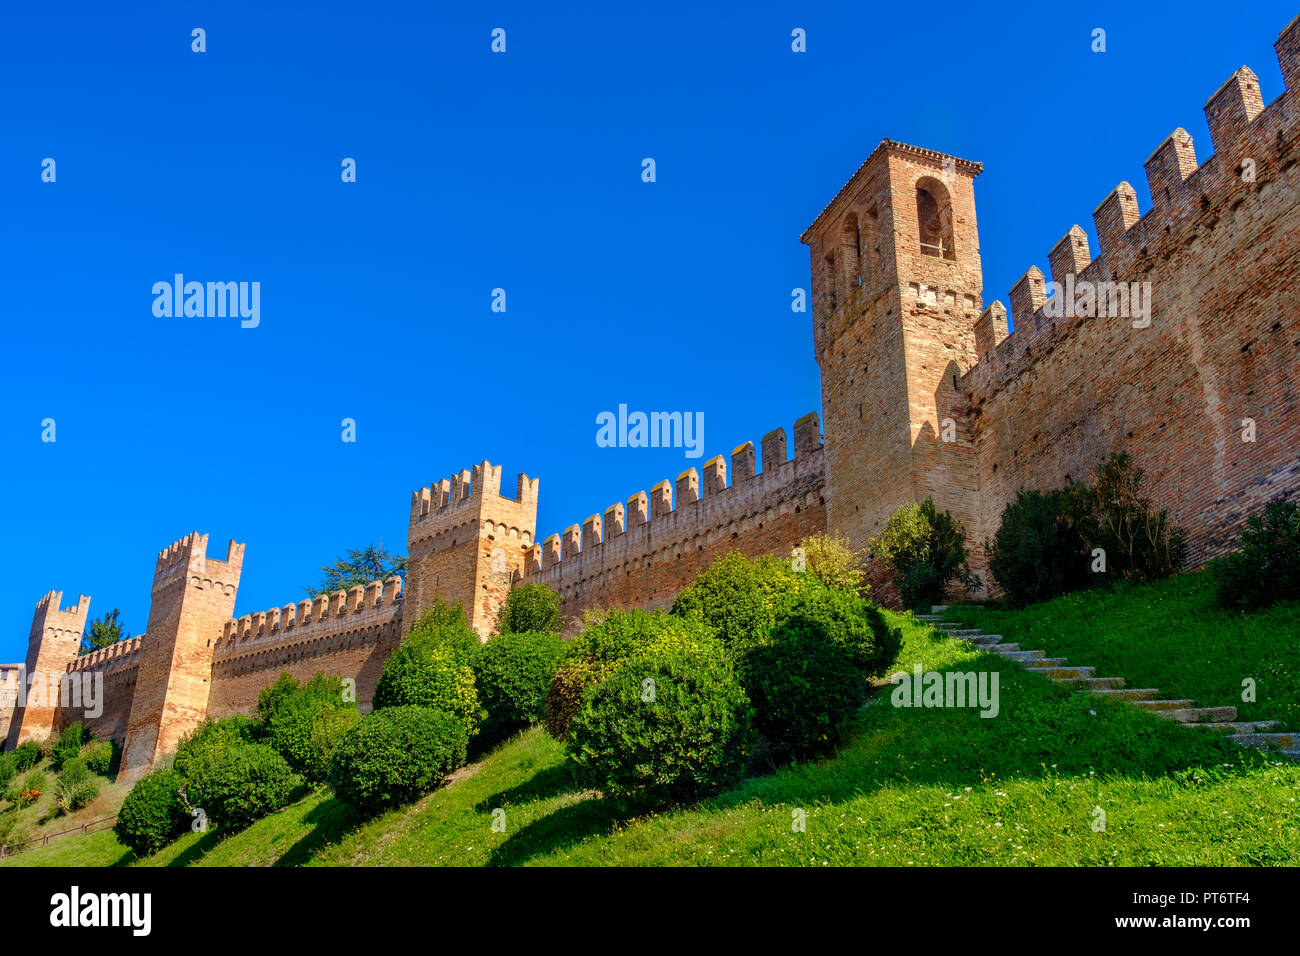 Les murs du château de Gradara - fond copyspace - Pesaro - Italie Banque D'Images